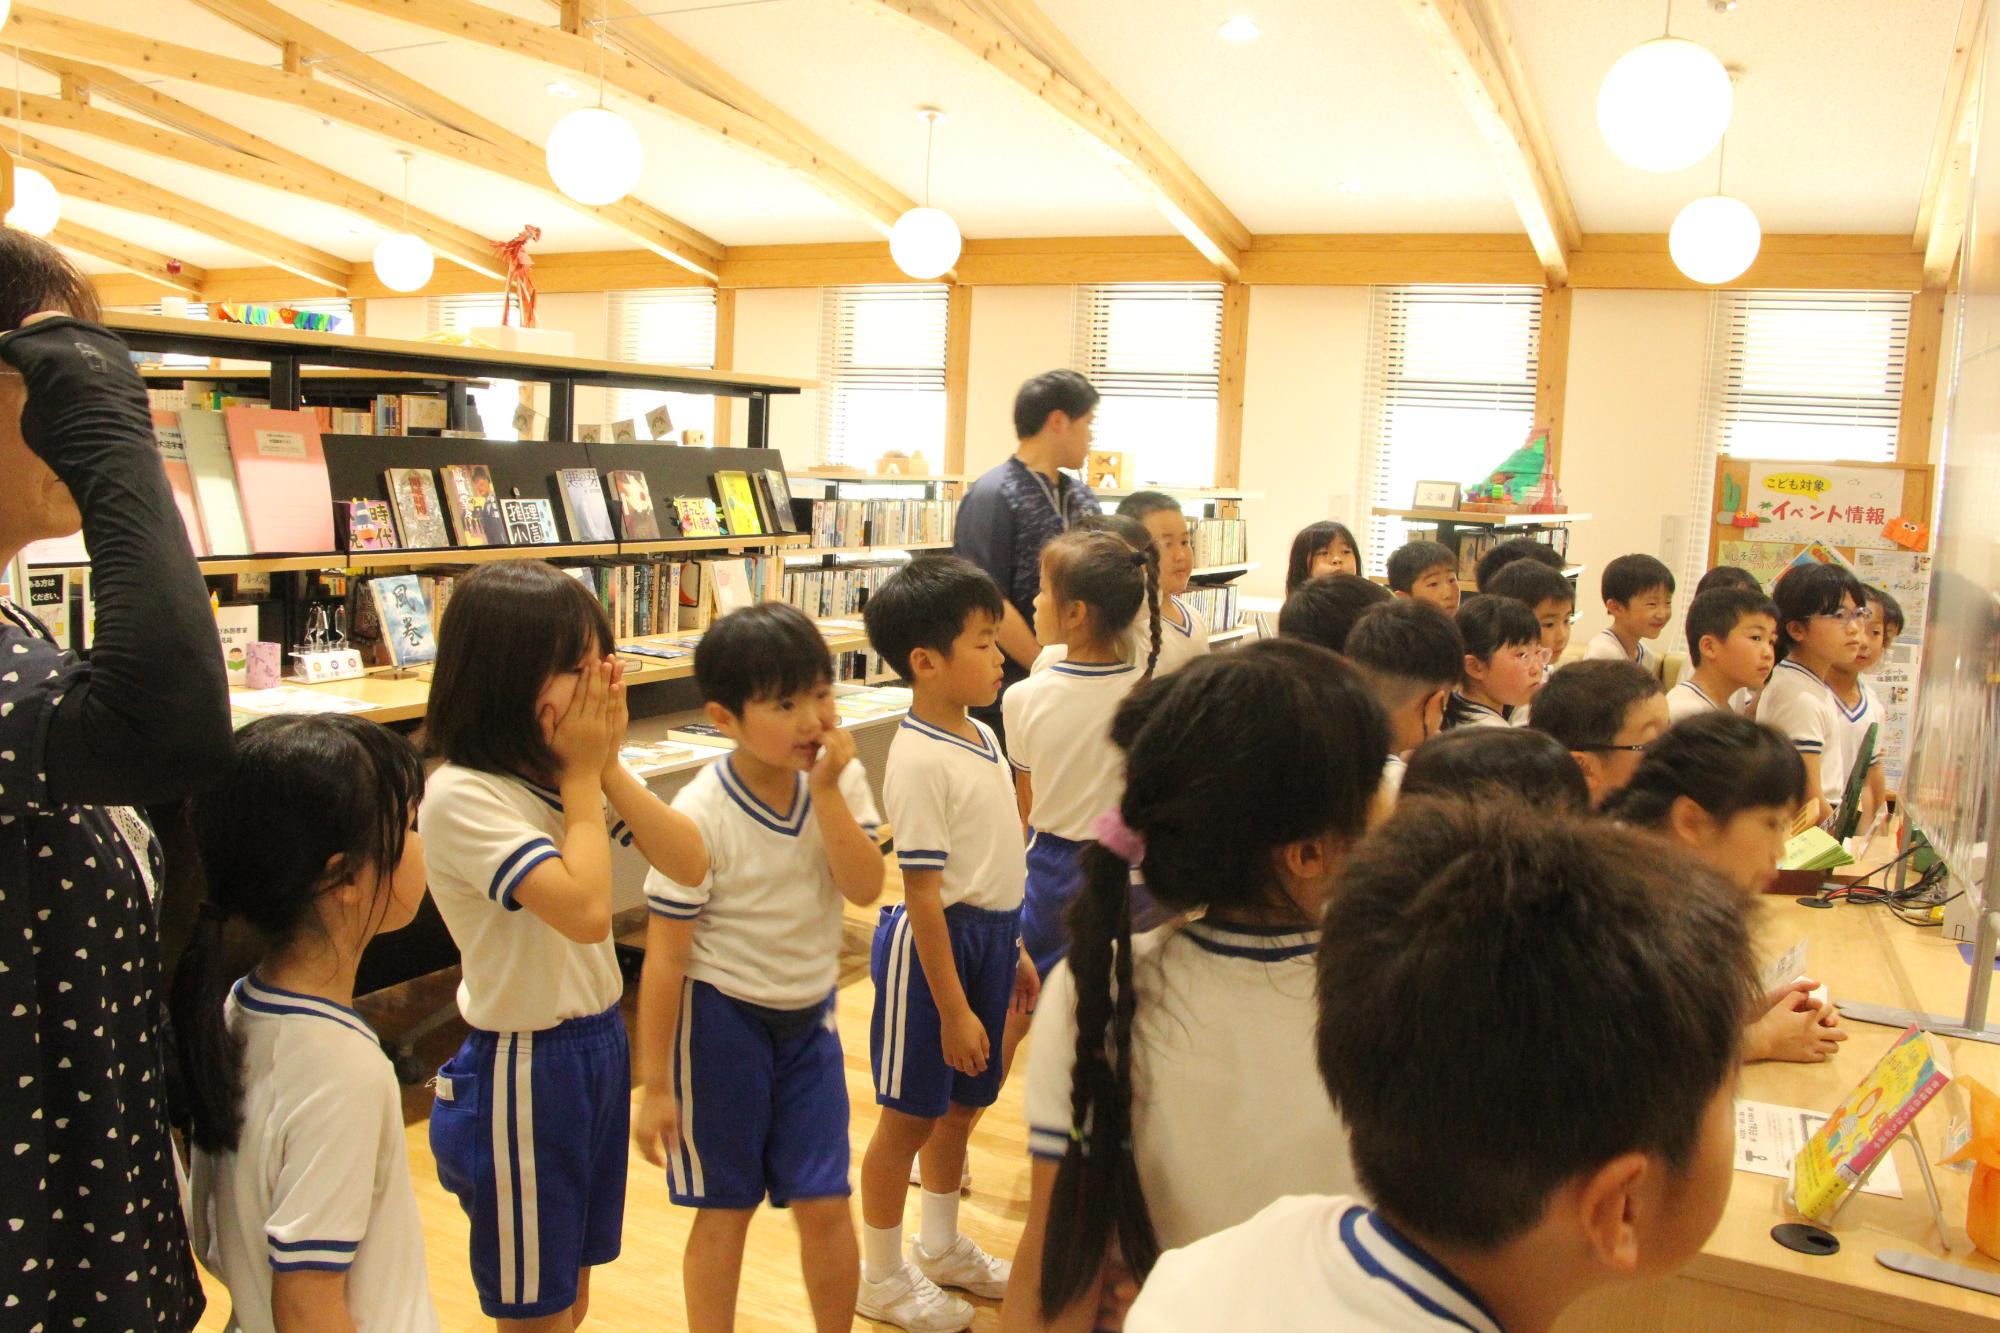 いちのぴあ図書室に児童らが集まり、その特徴や利用方法を市の職員に尋ねている写真